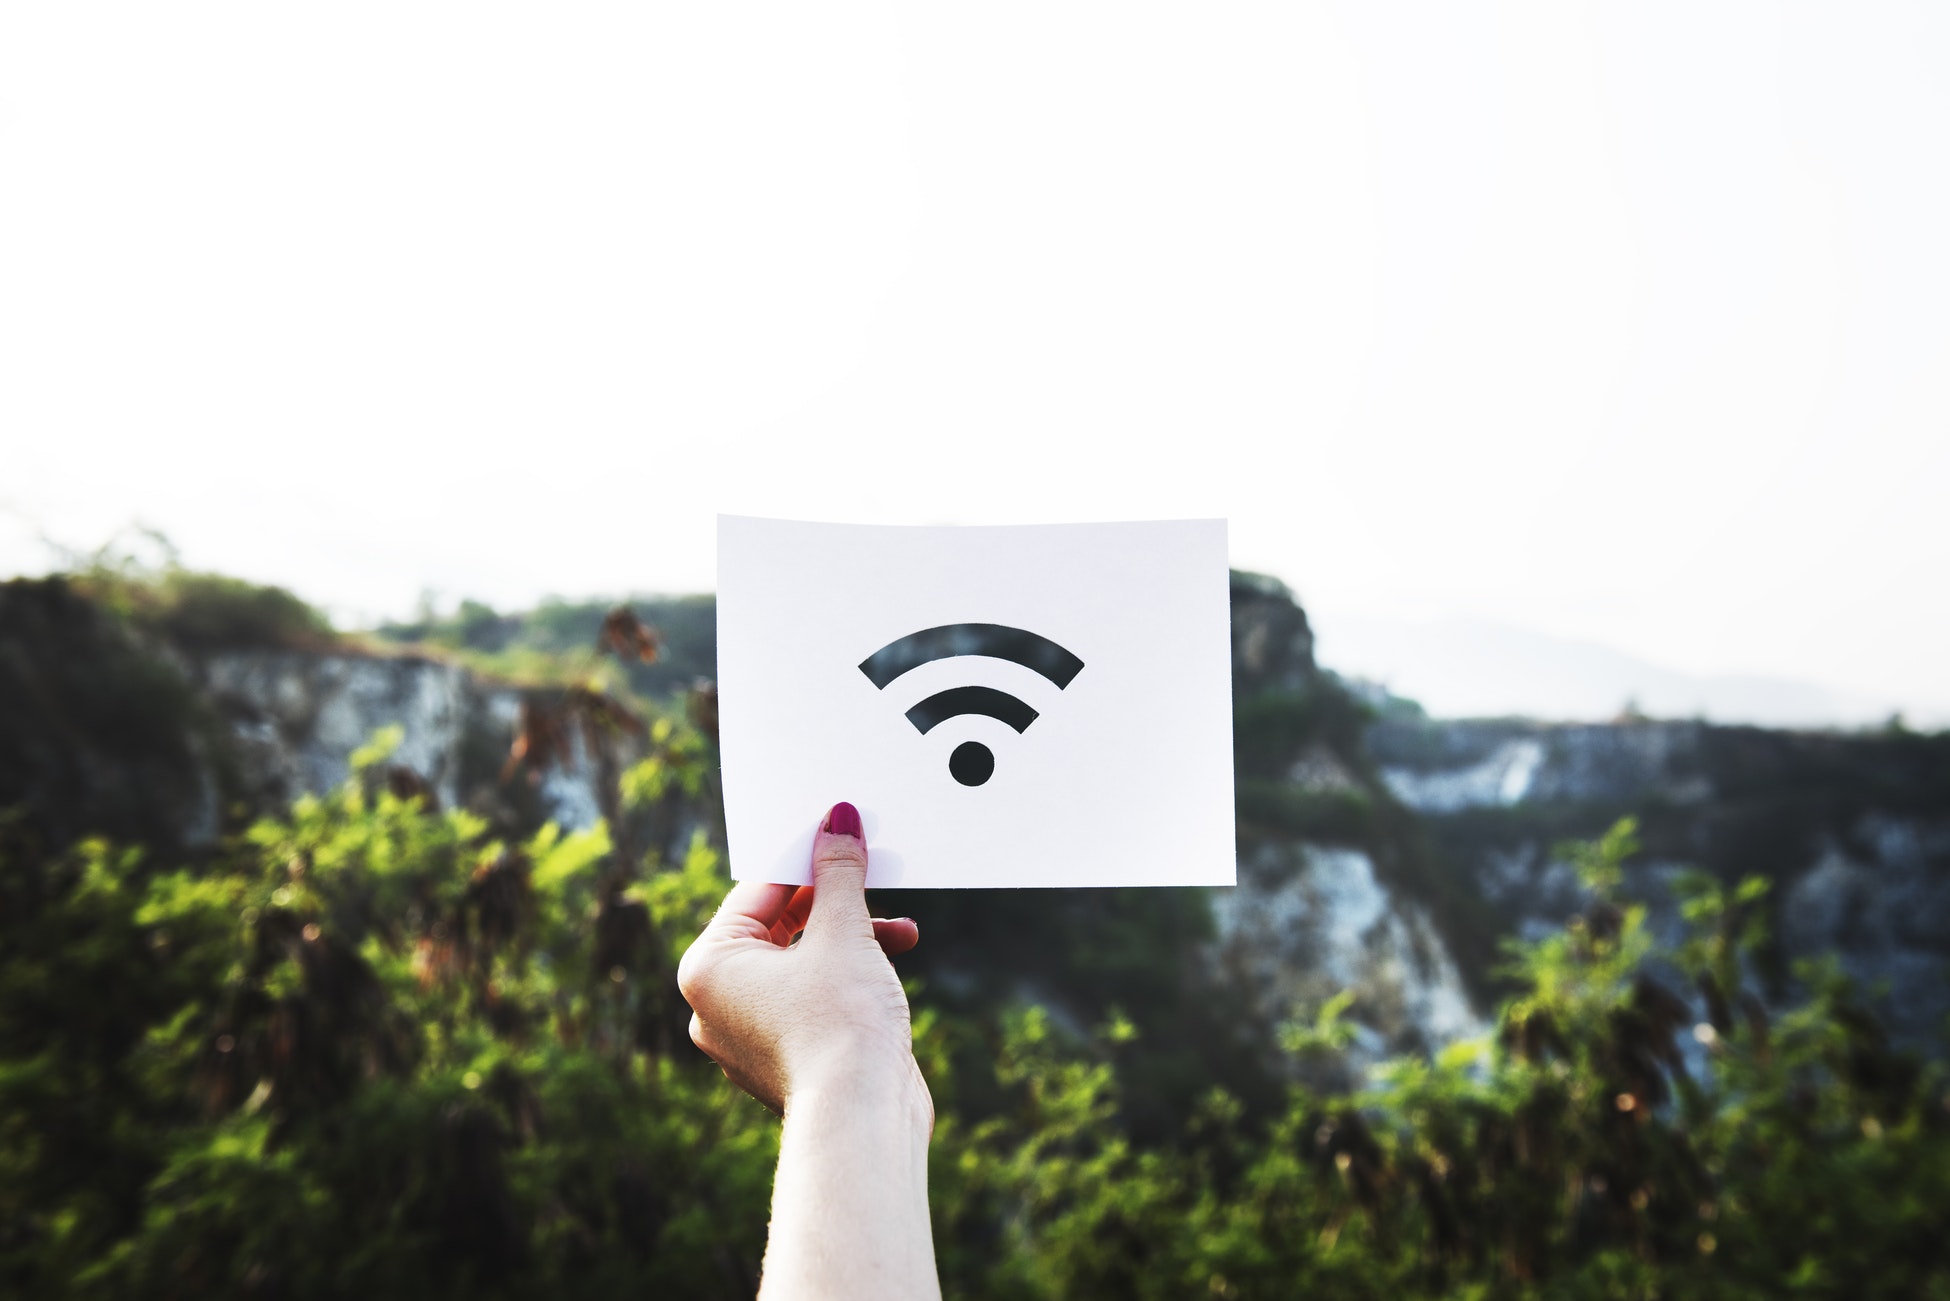 WiFi Alliance Menjenamakan Semula Piawaian 802.11ac Sebagai WiFi 5, 802.11ax Sebagai WiFi 6